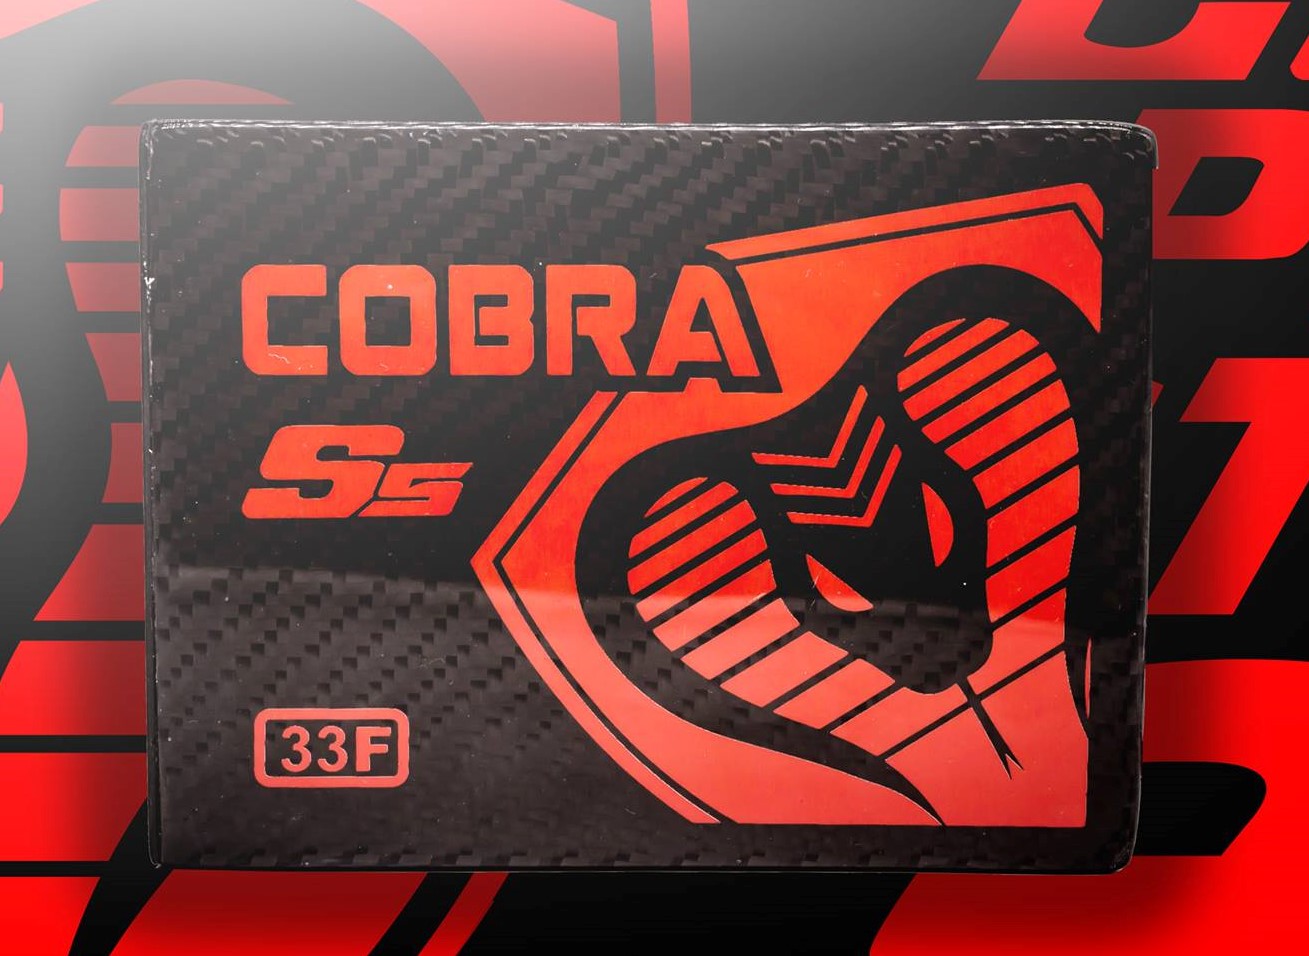 Cobra Carbon 33F